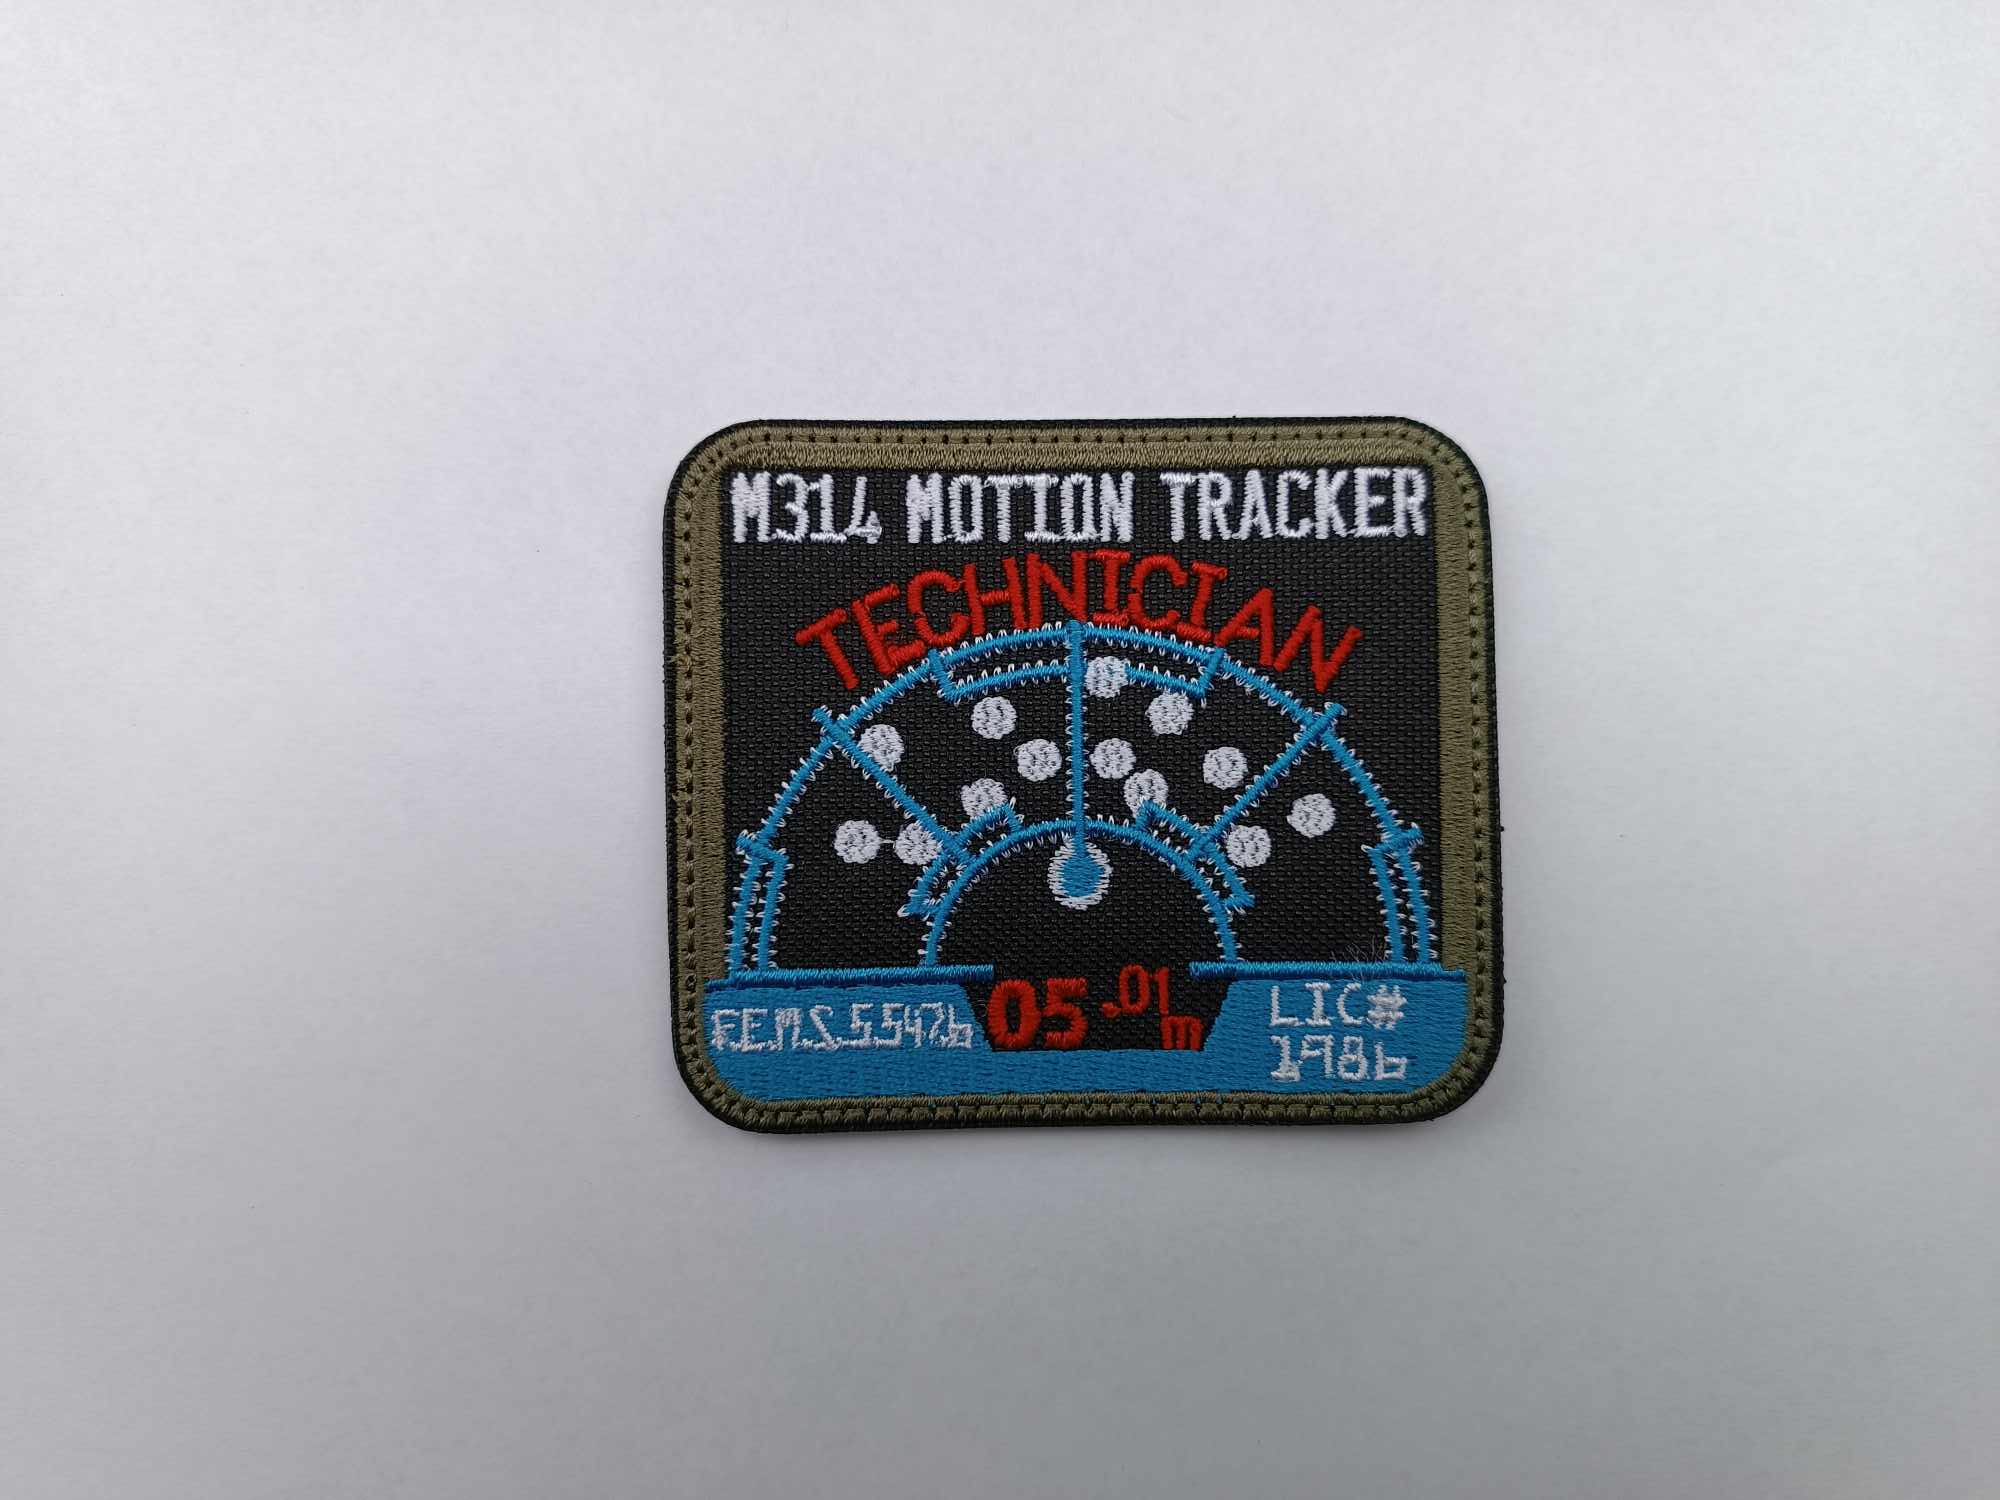 Naszywka M134 Motion Tracker